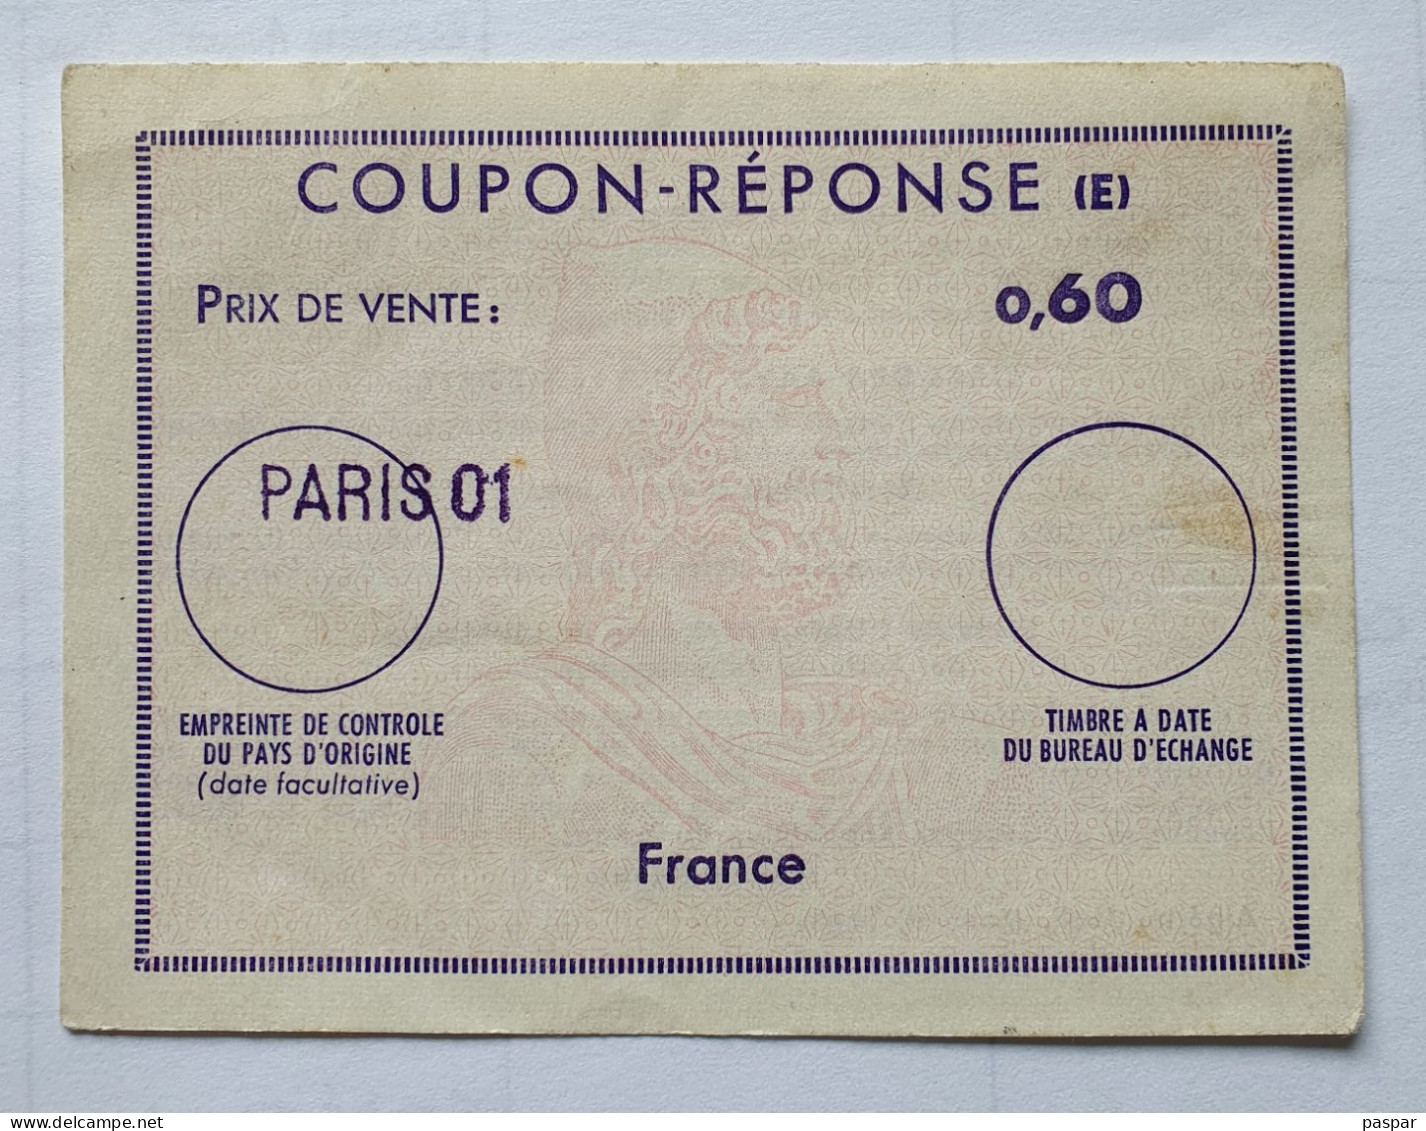 Coupon-réponse  France 0,60 F PARIS 01 - Coupons-réponse